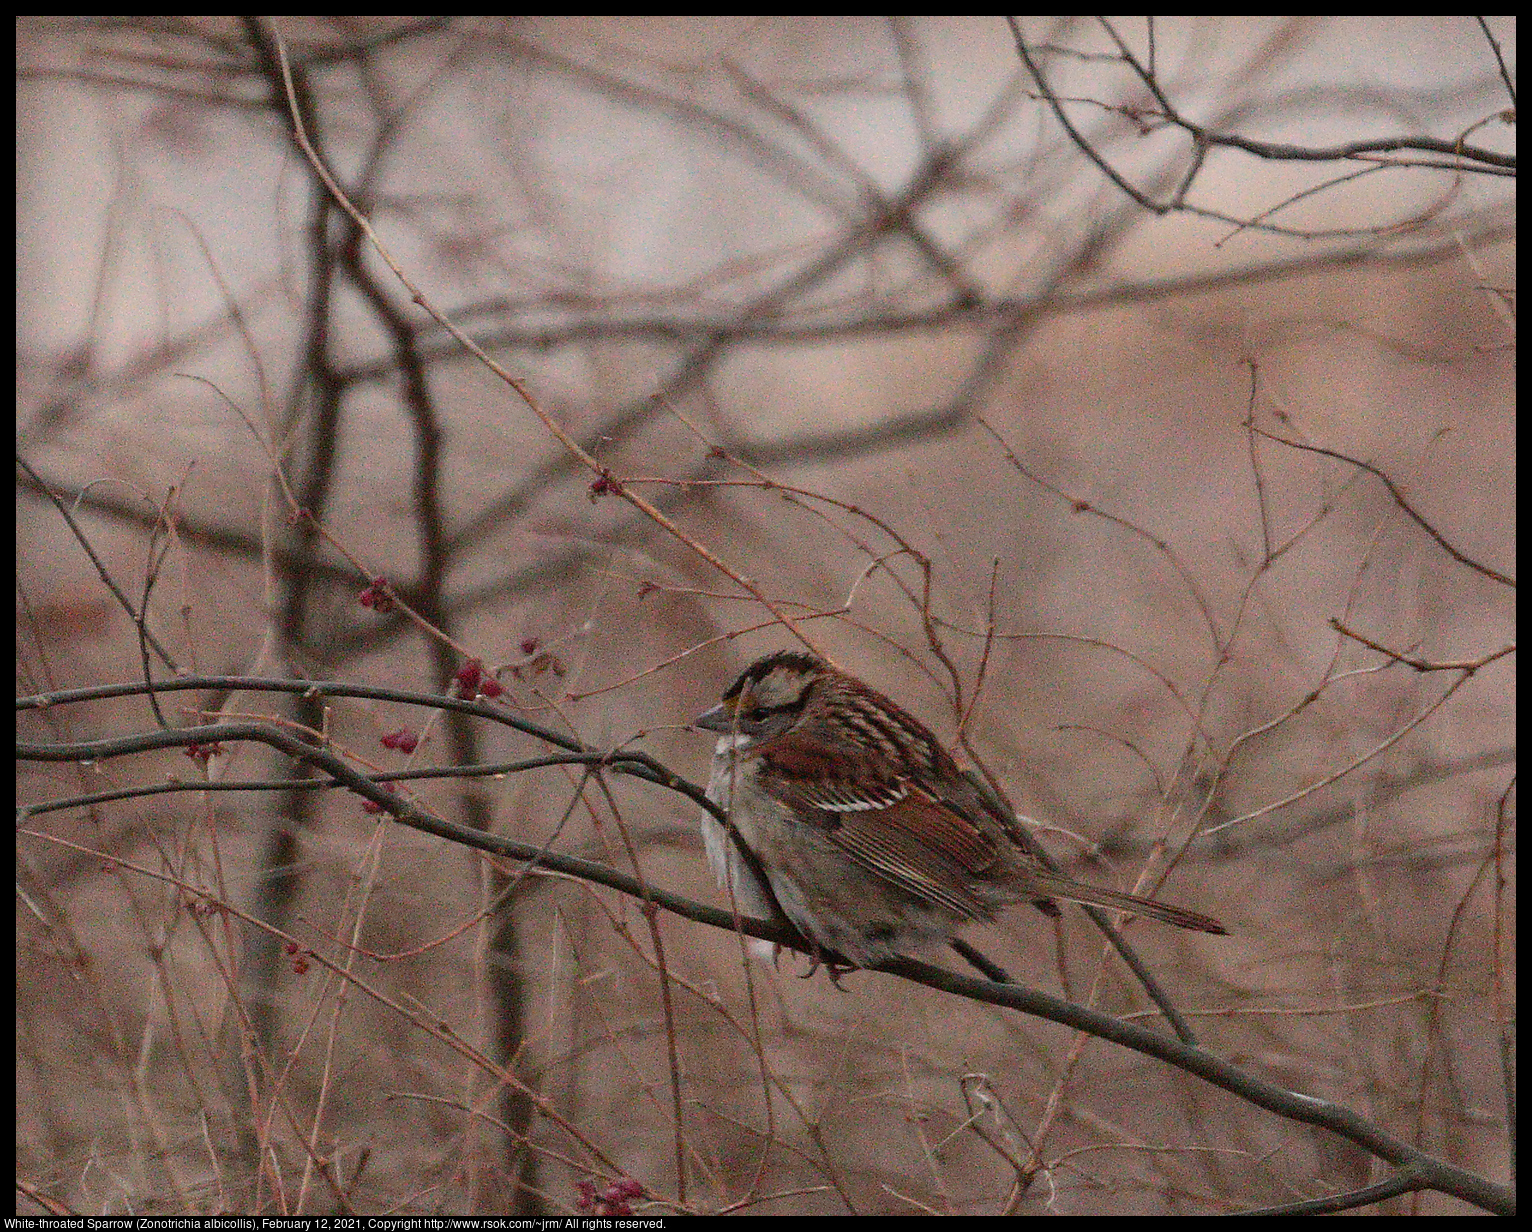 White-throated Sparrow (Zonotrichia albicollis), February 12, 2021